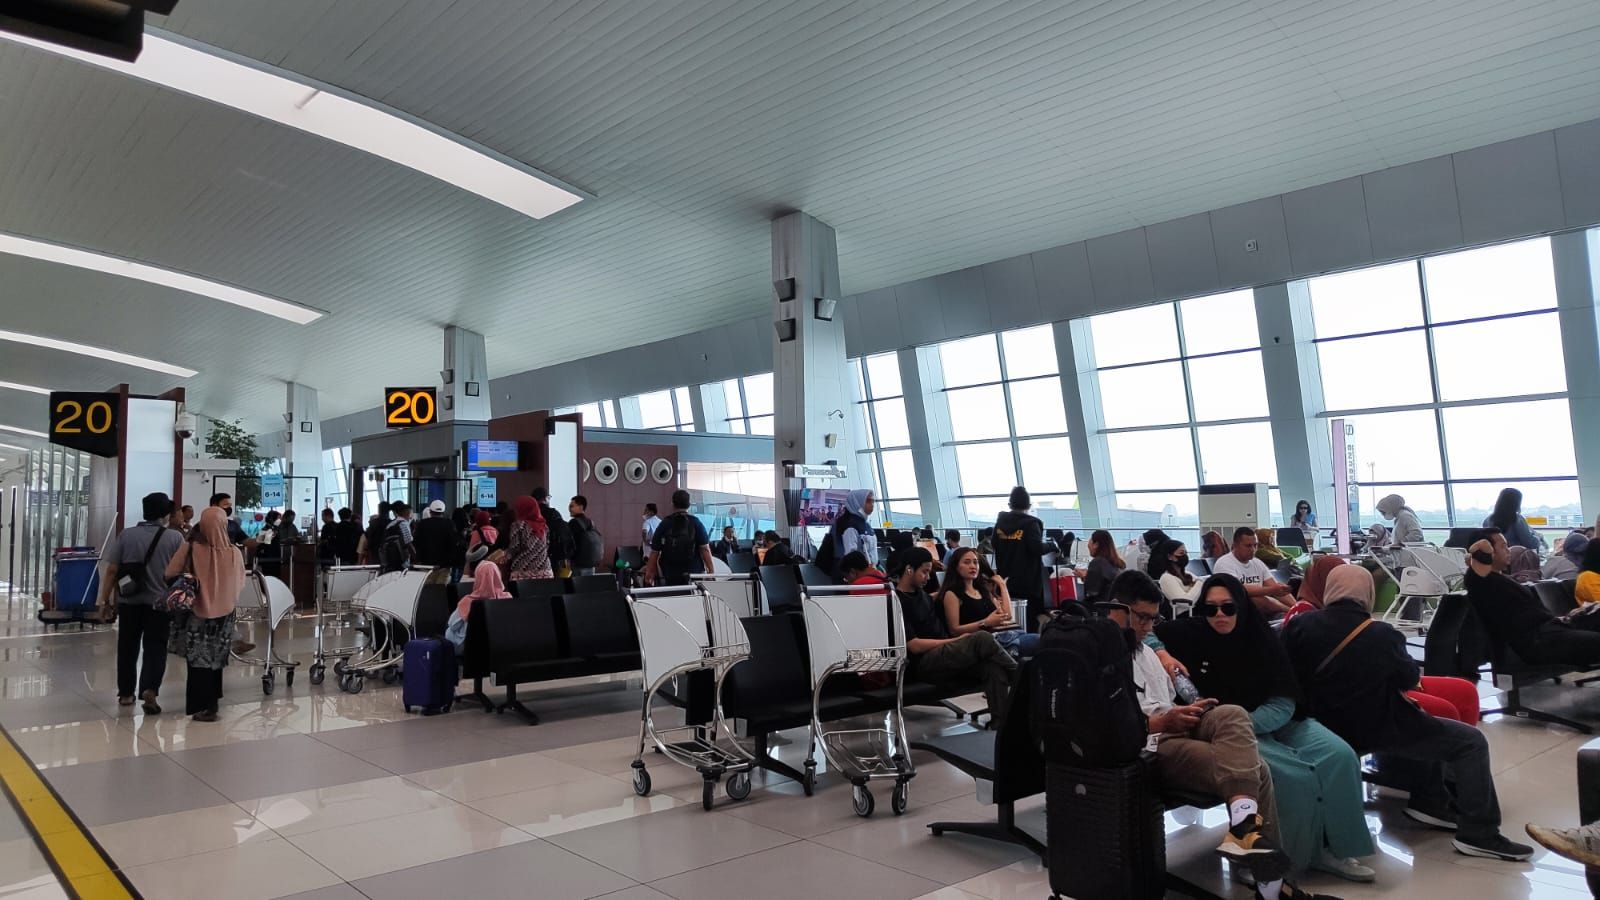 Bandara Soekarno-Hatta Jadi Bandara Tersibuk Se-Asia Tenggara Selama Periode Mudik Lebaran